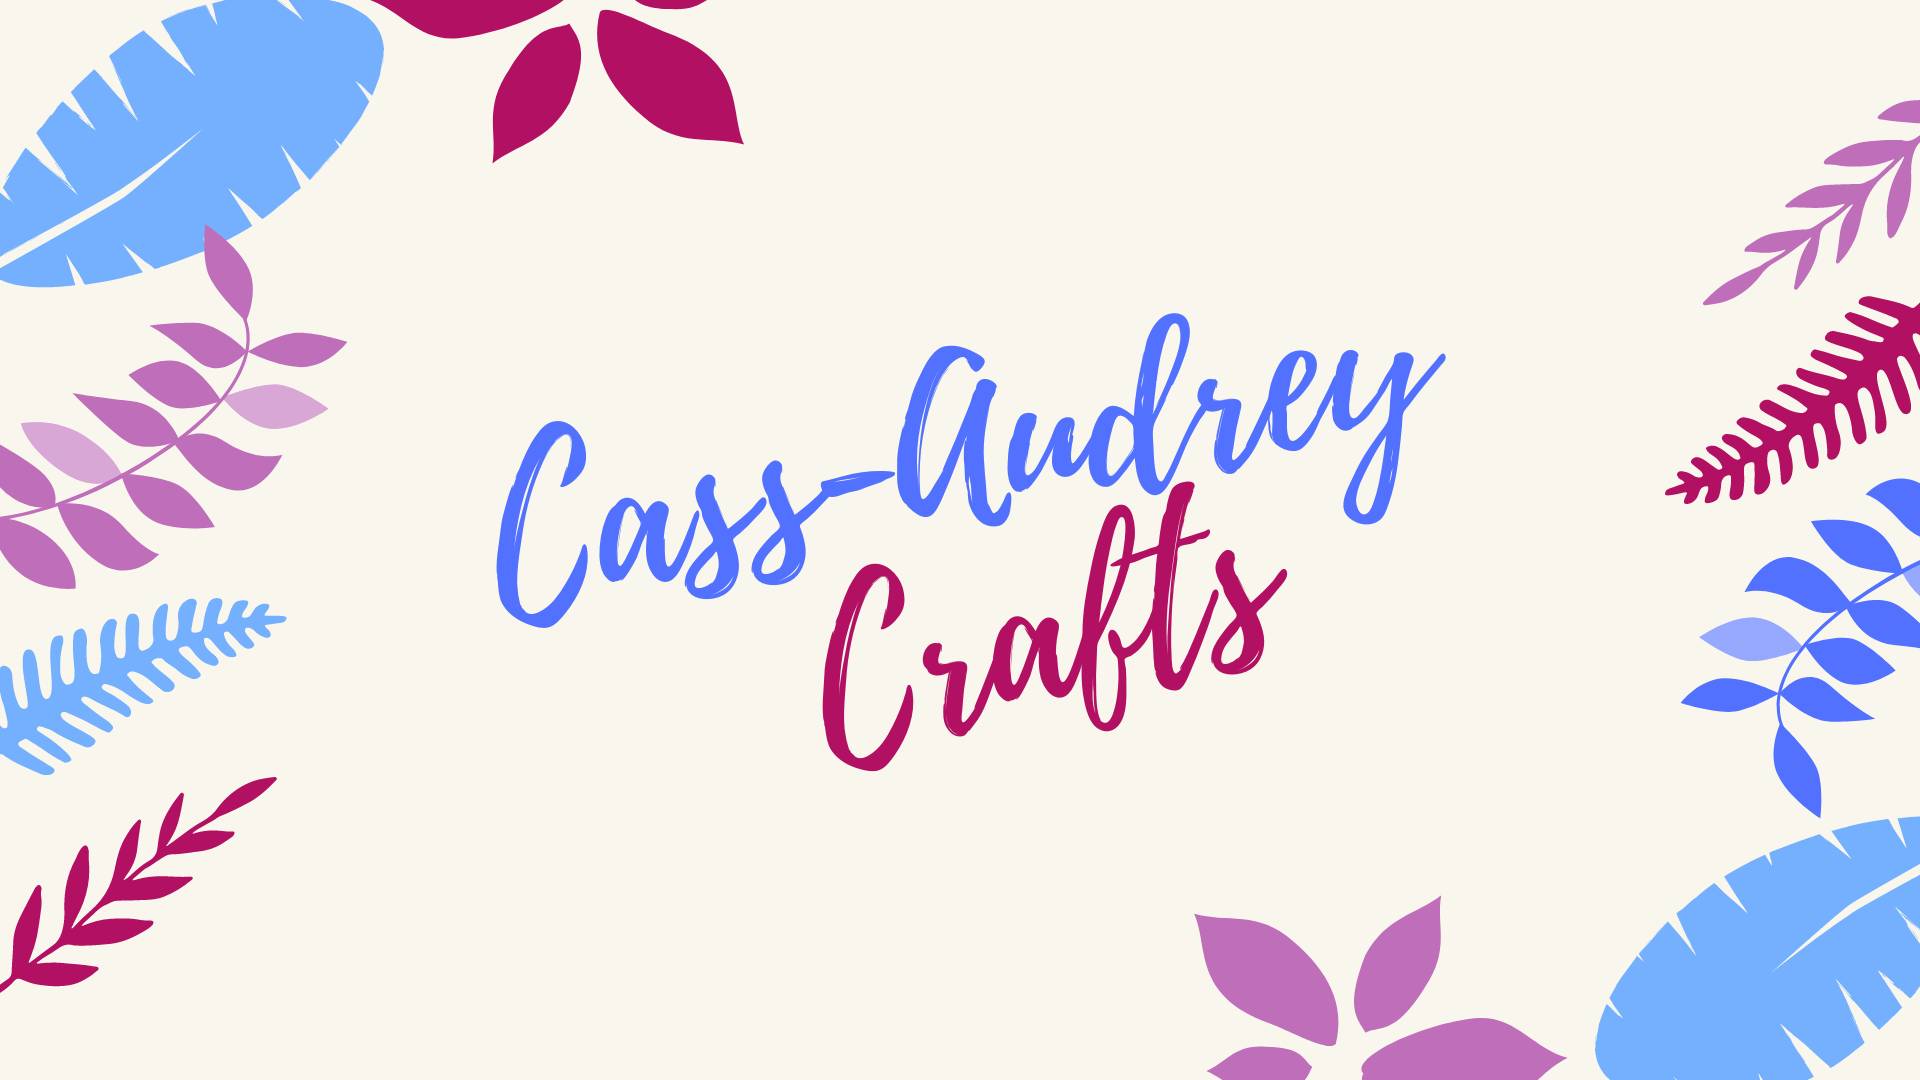 Cass-Audrey Crafts